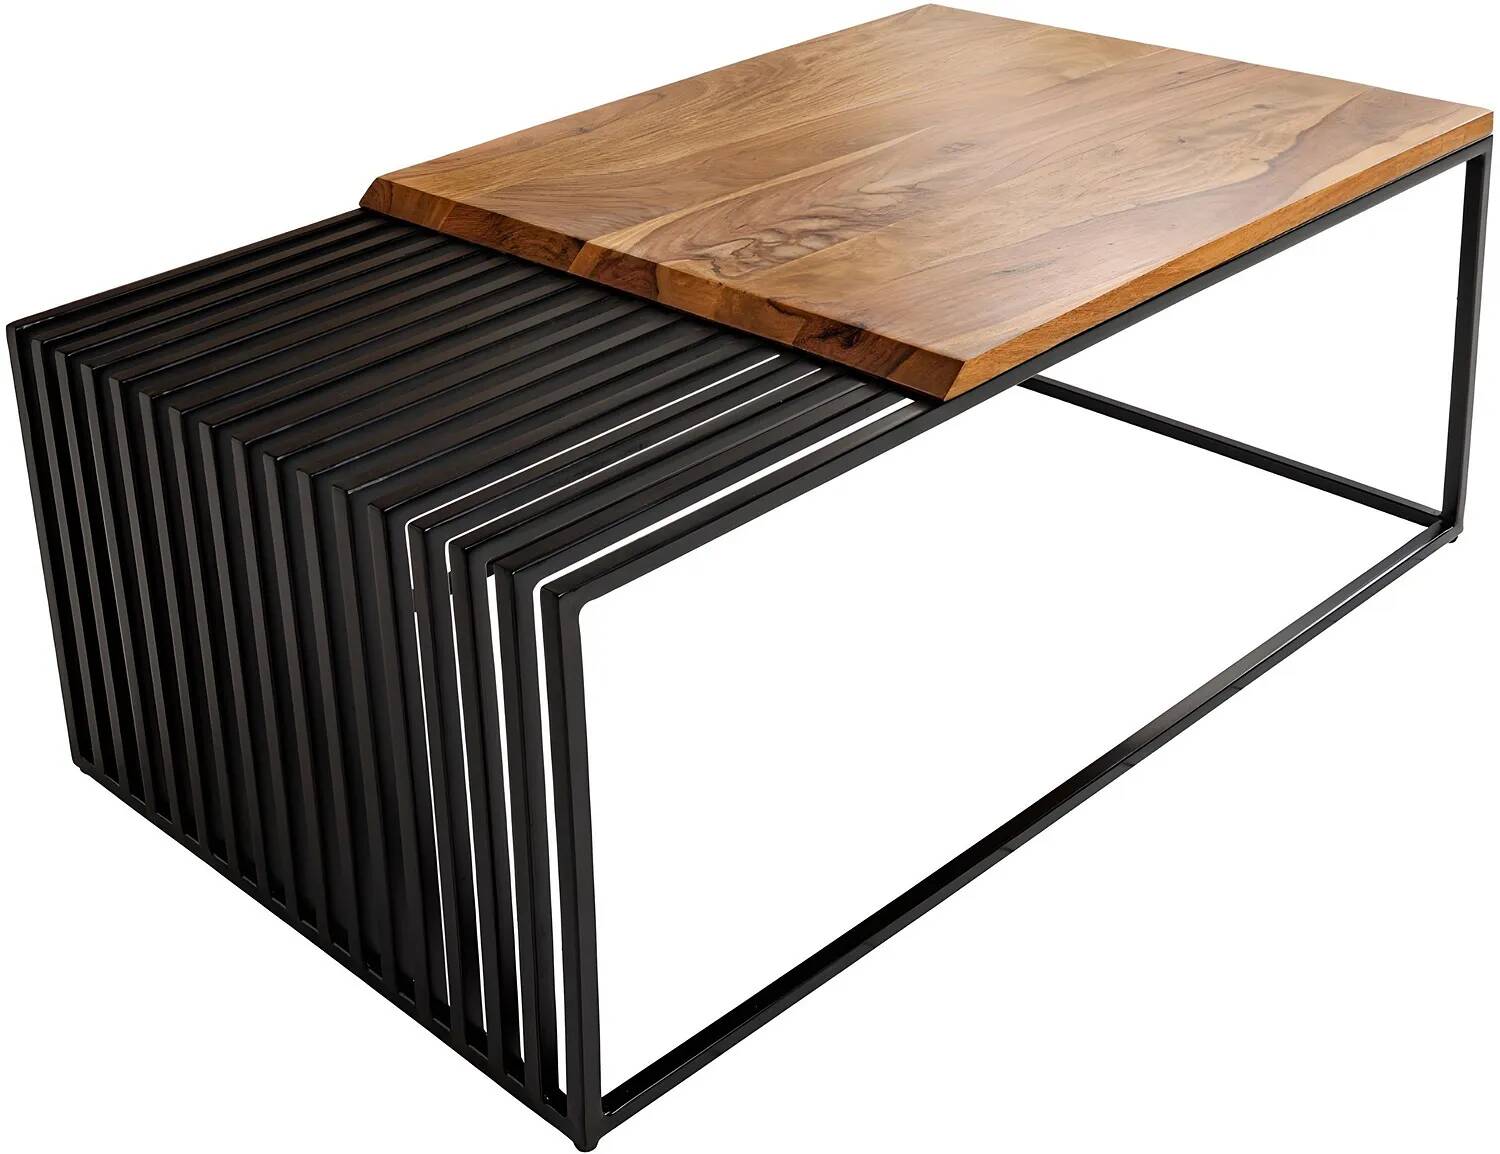 Table basse en bois massif sheesham laqué et métal noir